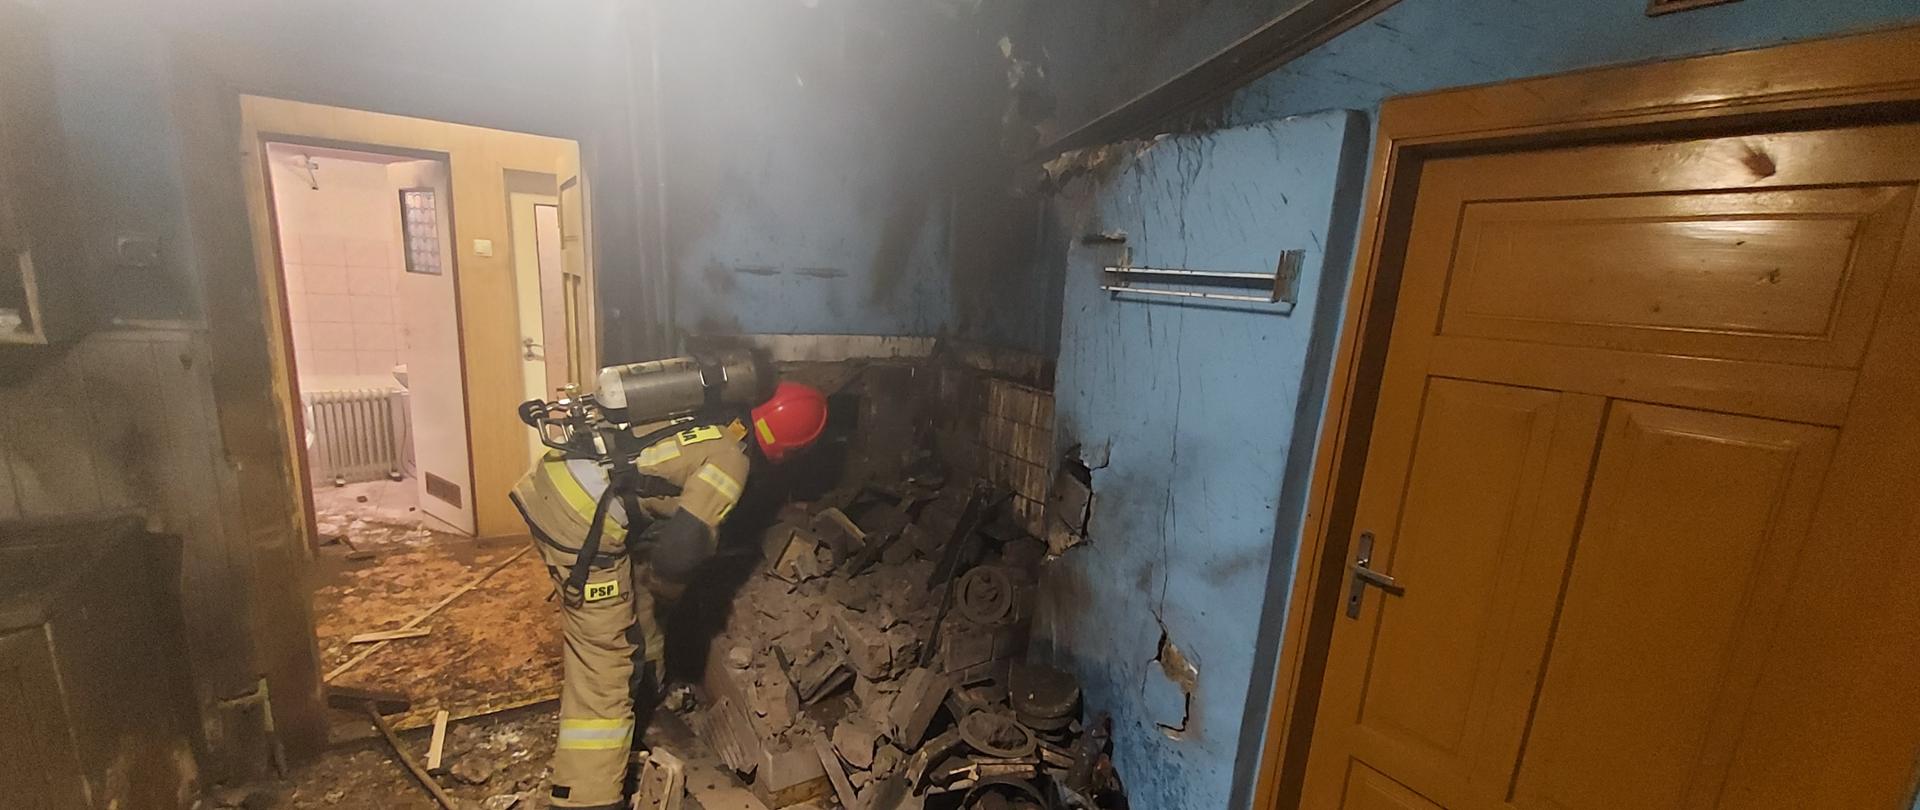 Zdjęcie przedstawia strażaka w żółtym ubraniu sprawdzającego gruzy po wybuchu kuchni kaflowej